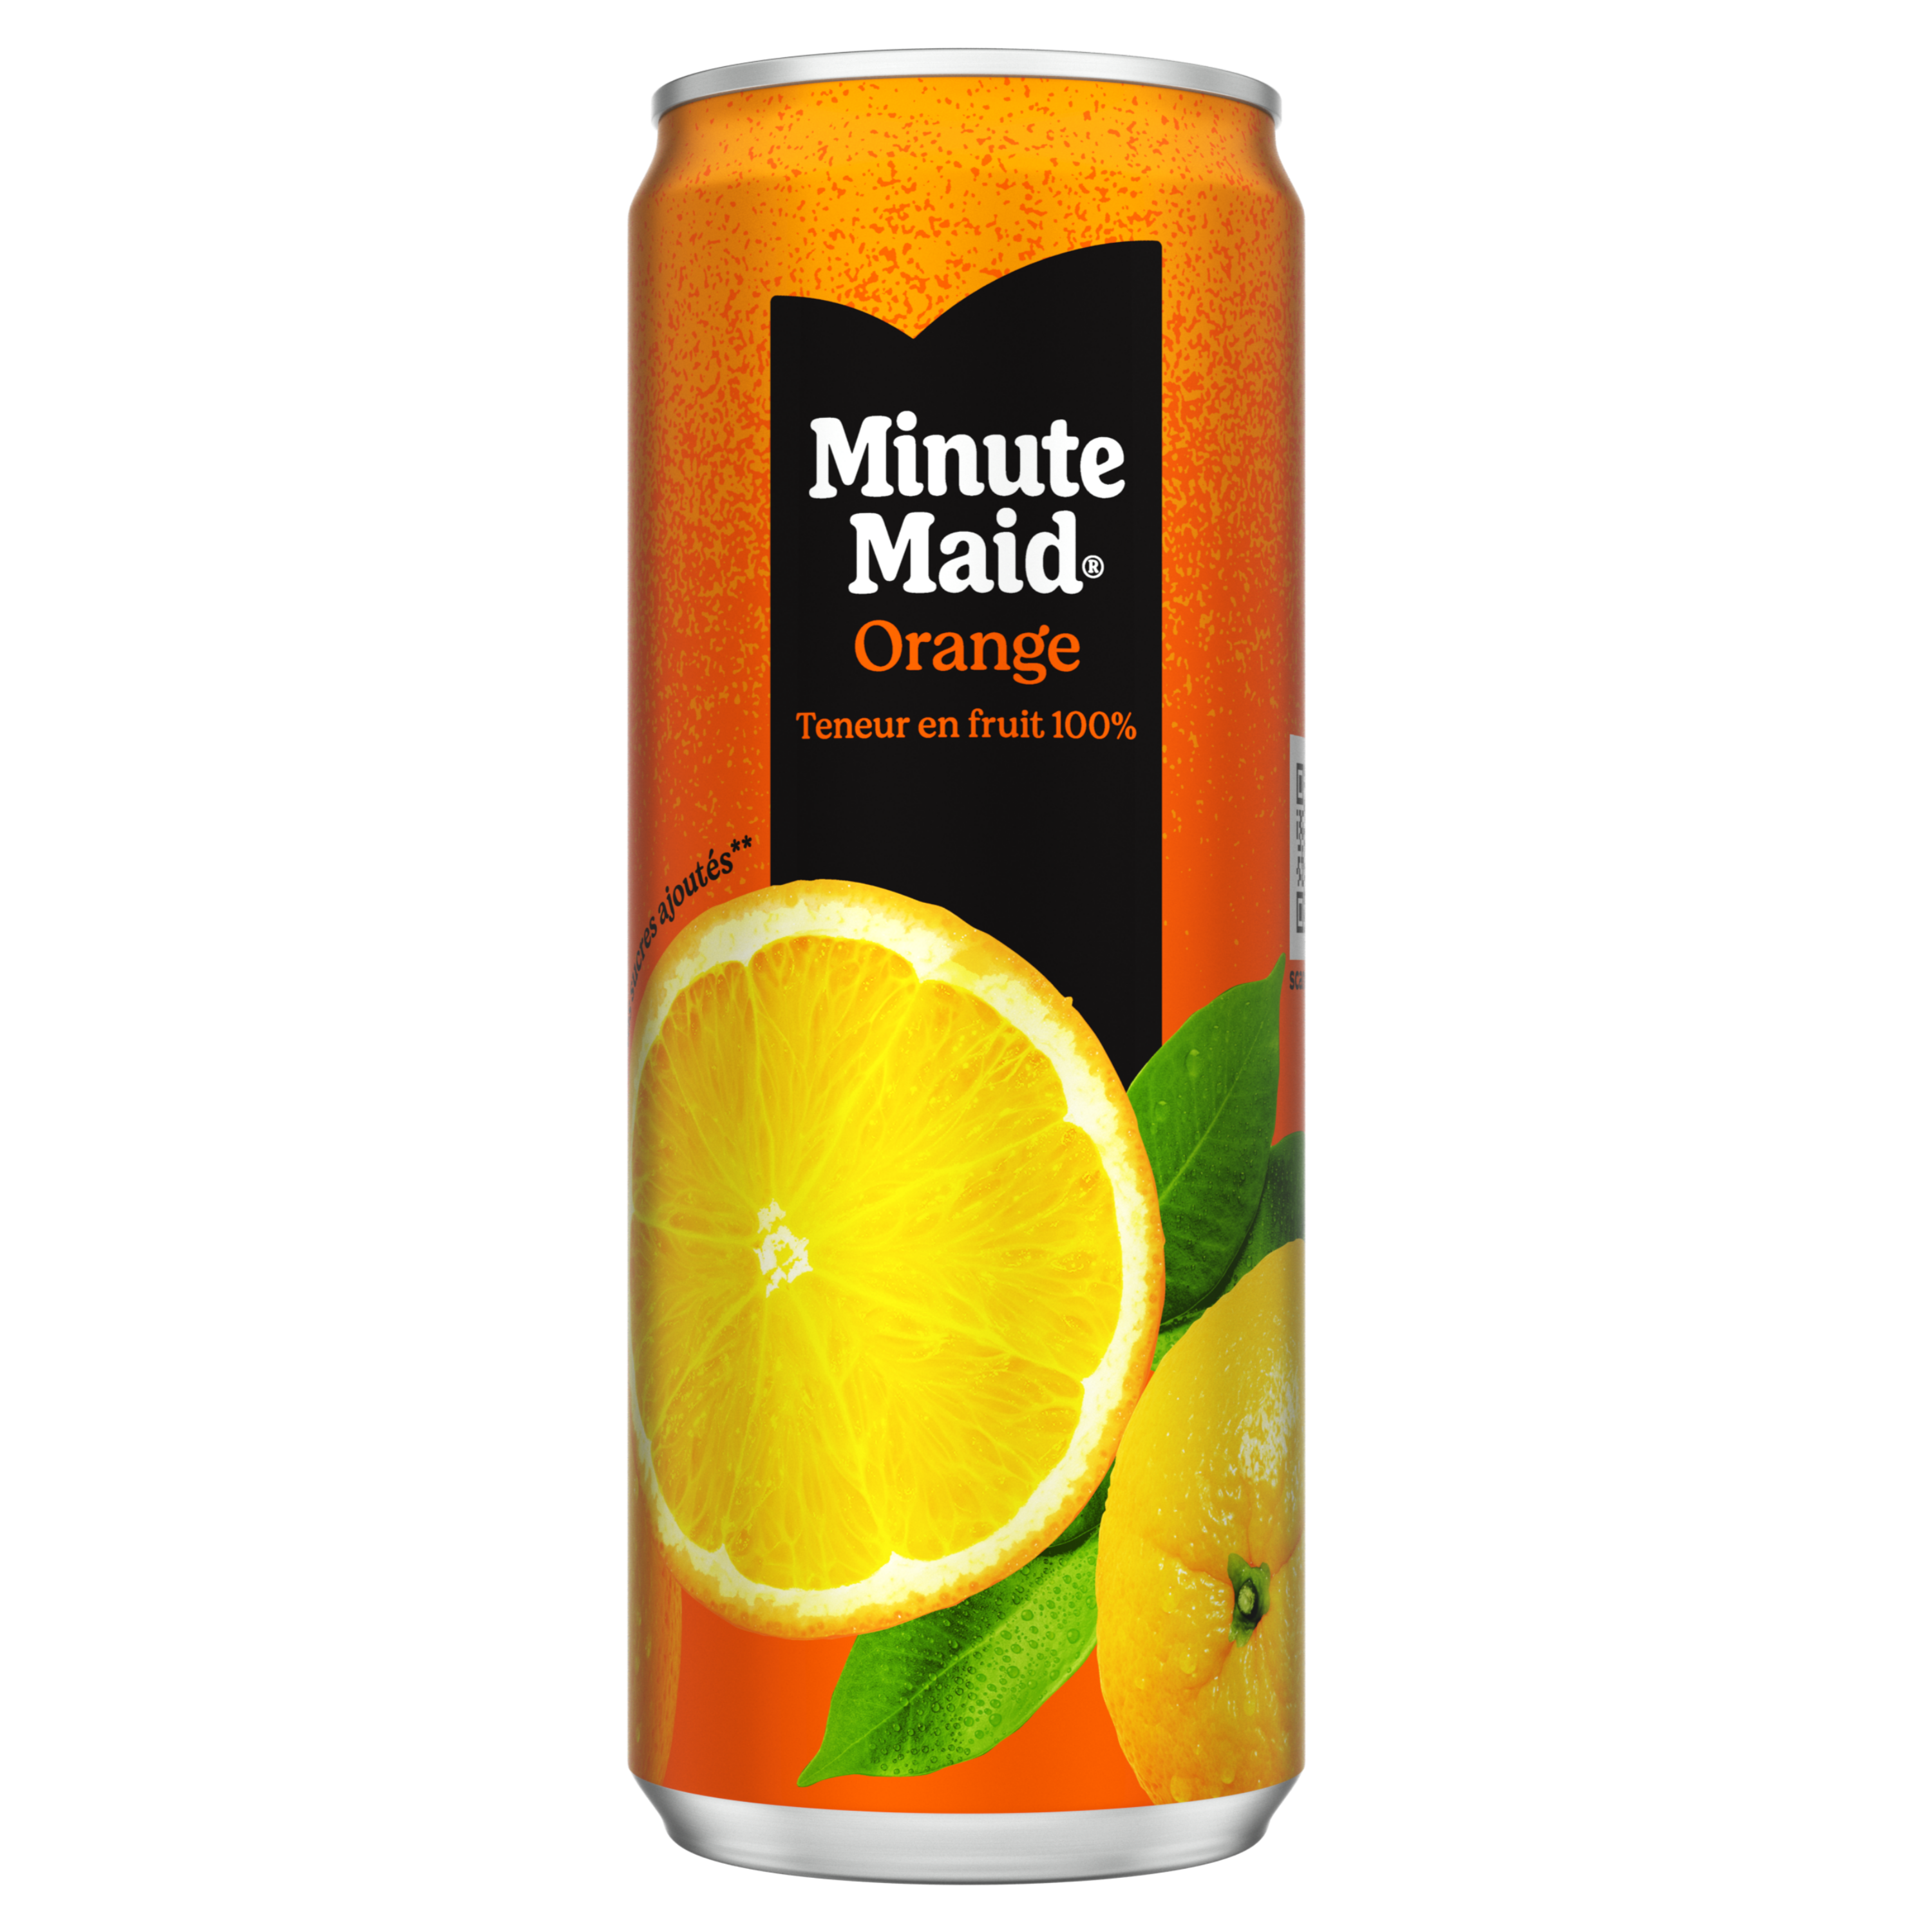 Bouteille de Minute Maid orange